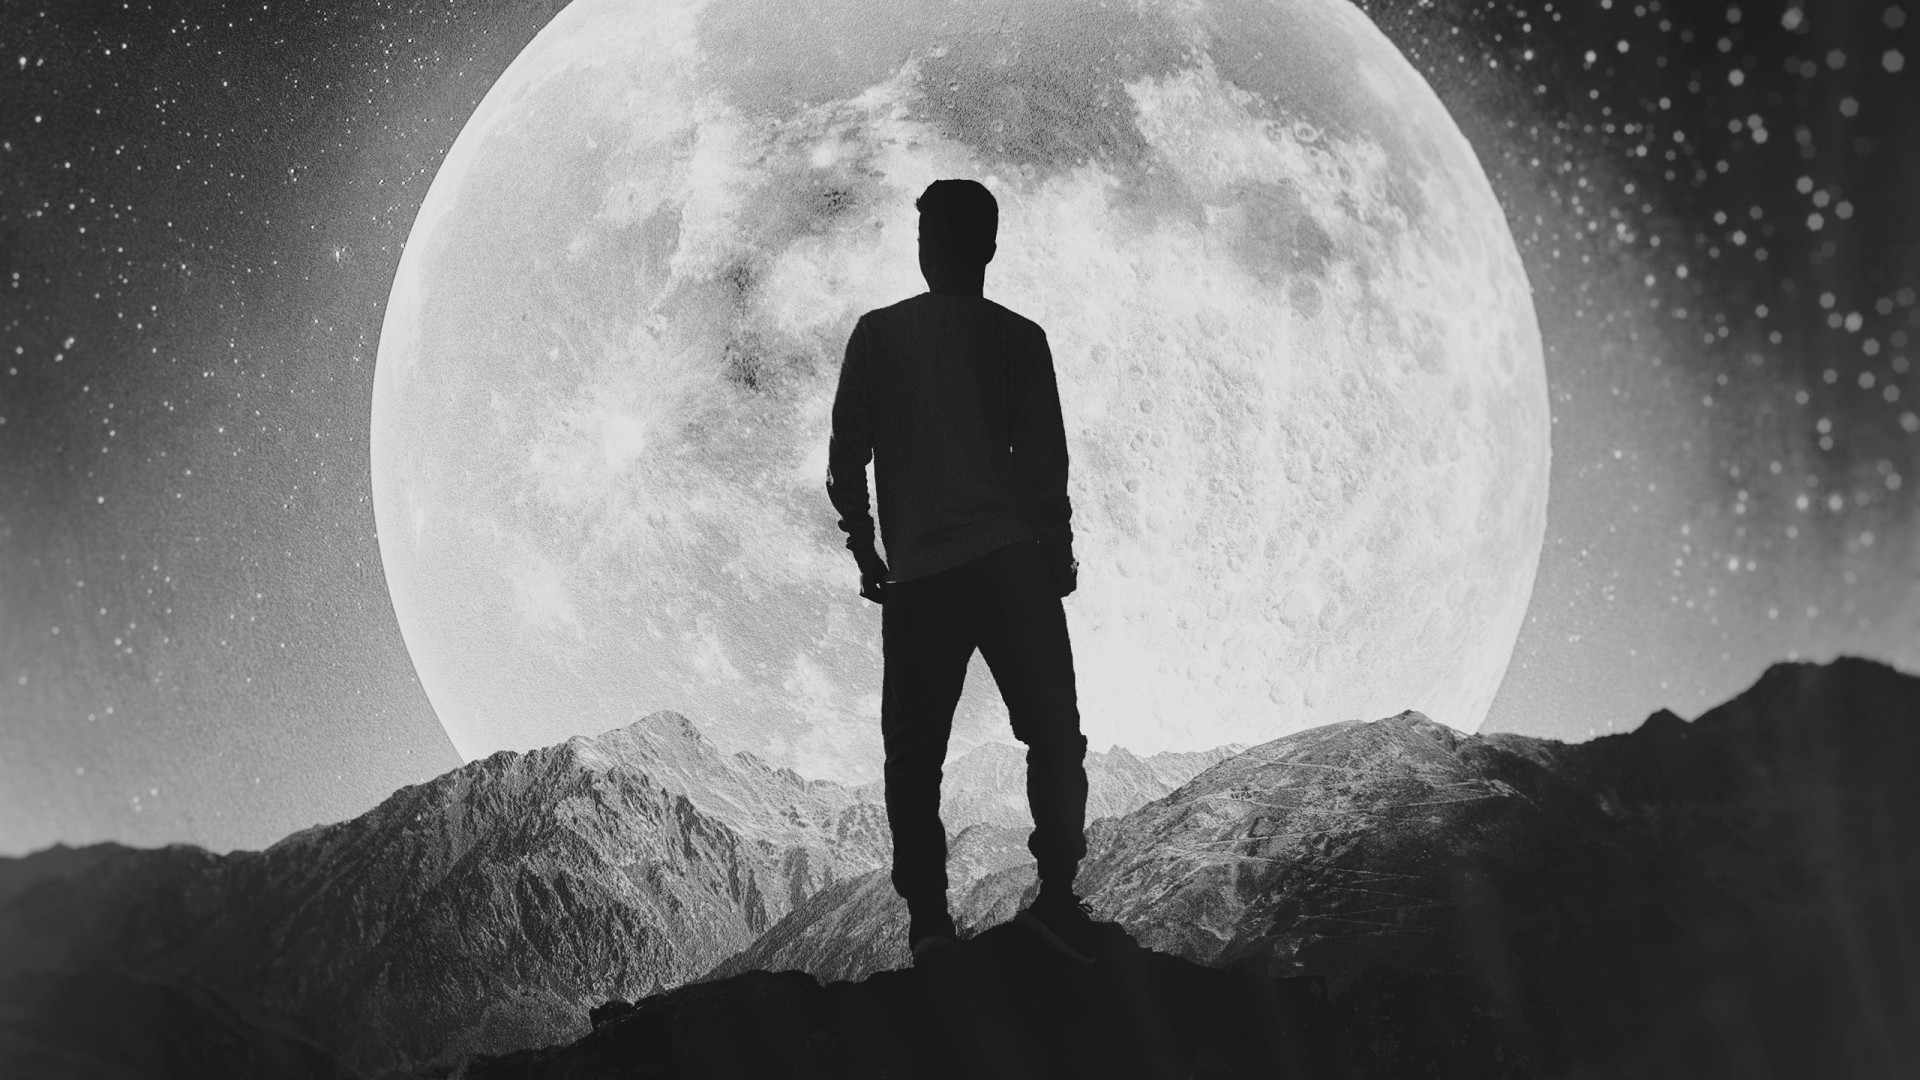 fond d'écran homme seul,photographier,ciel,lune,photographie monochrome,noir et blanc